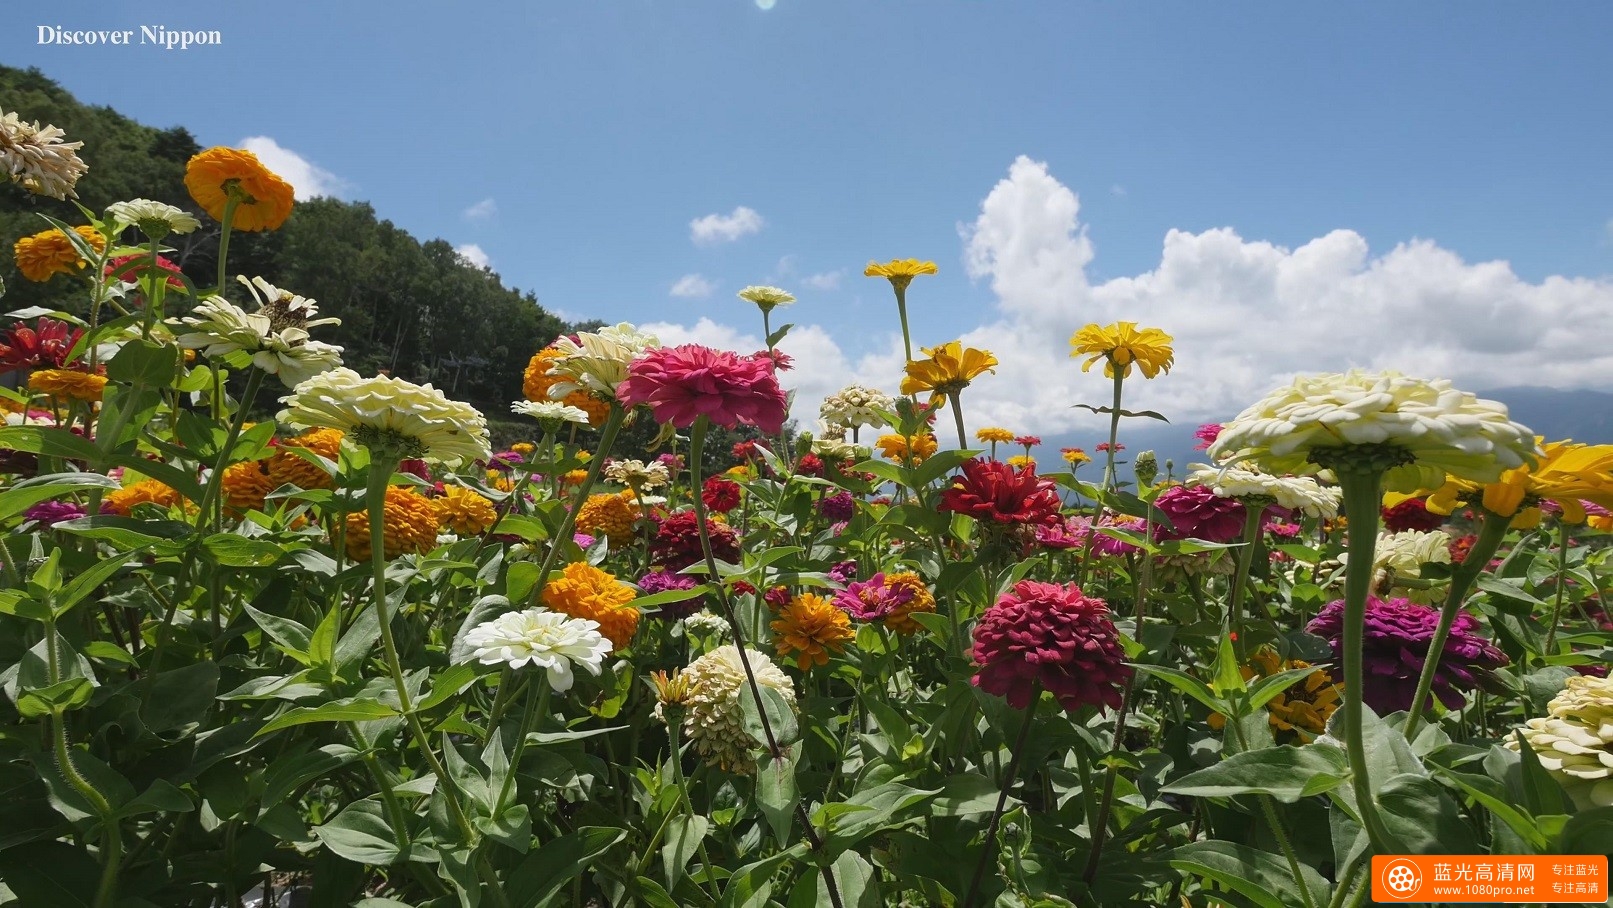 超清晰富士高原花景,百花齐放的4k风景视频免费下载